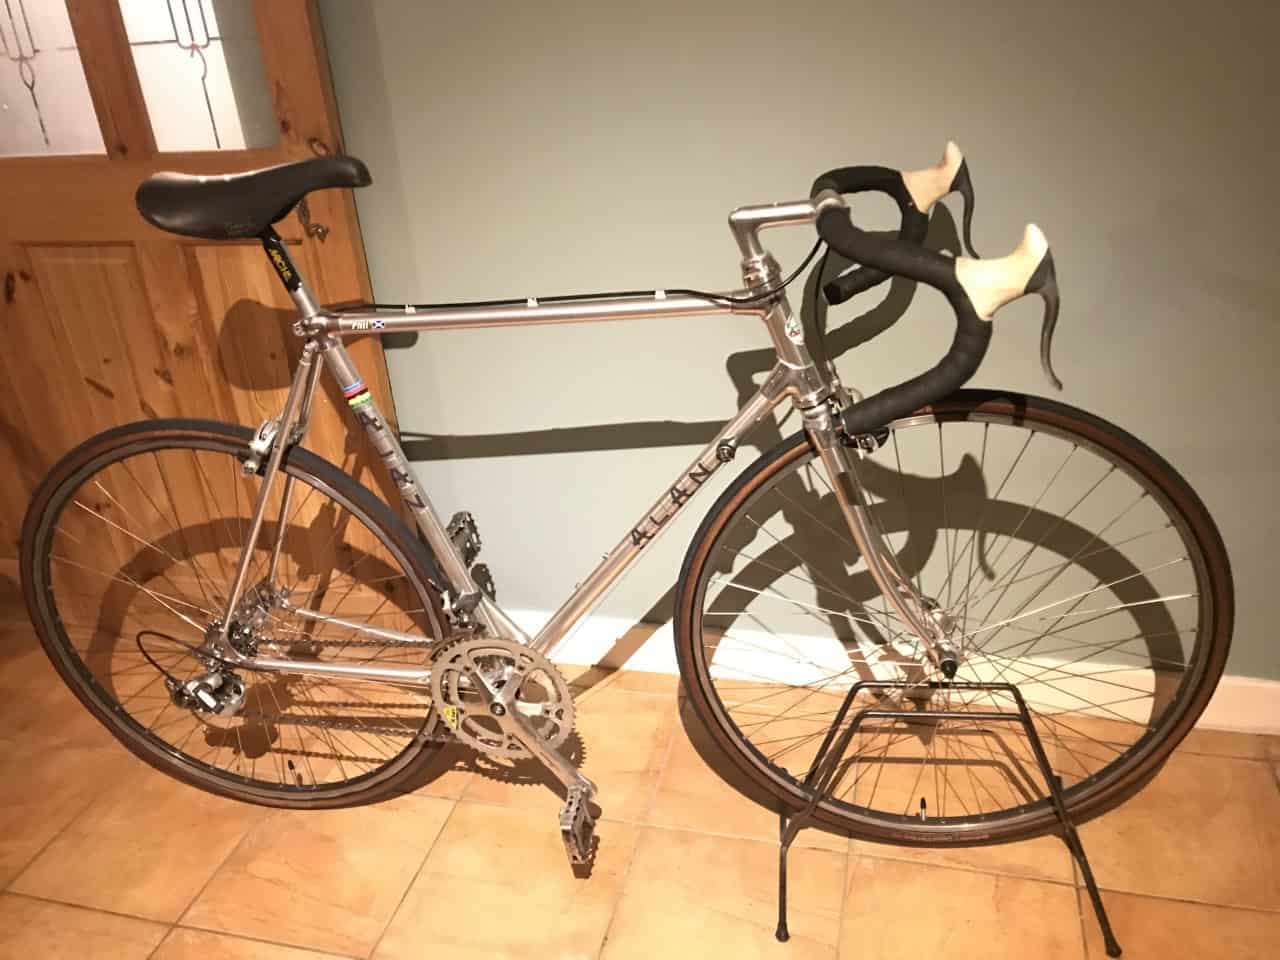 Image of silver Alan Competizione bike